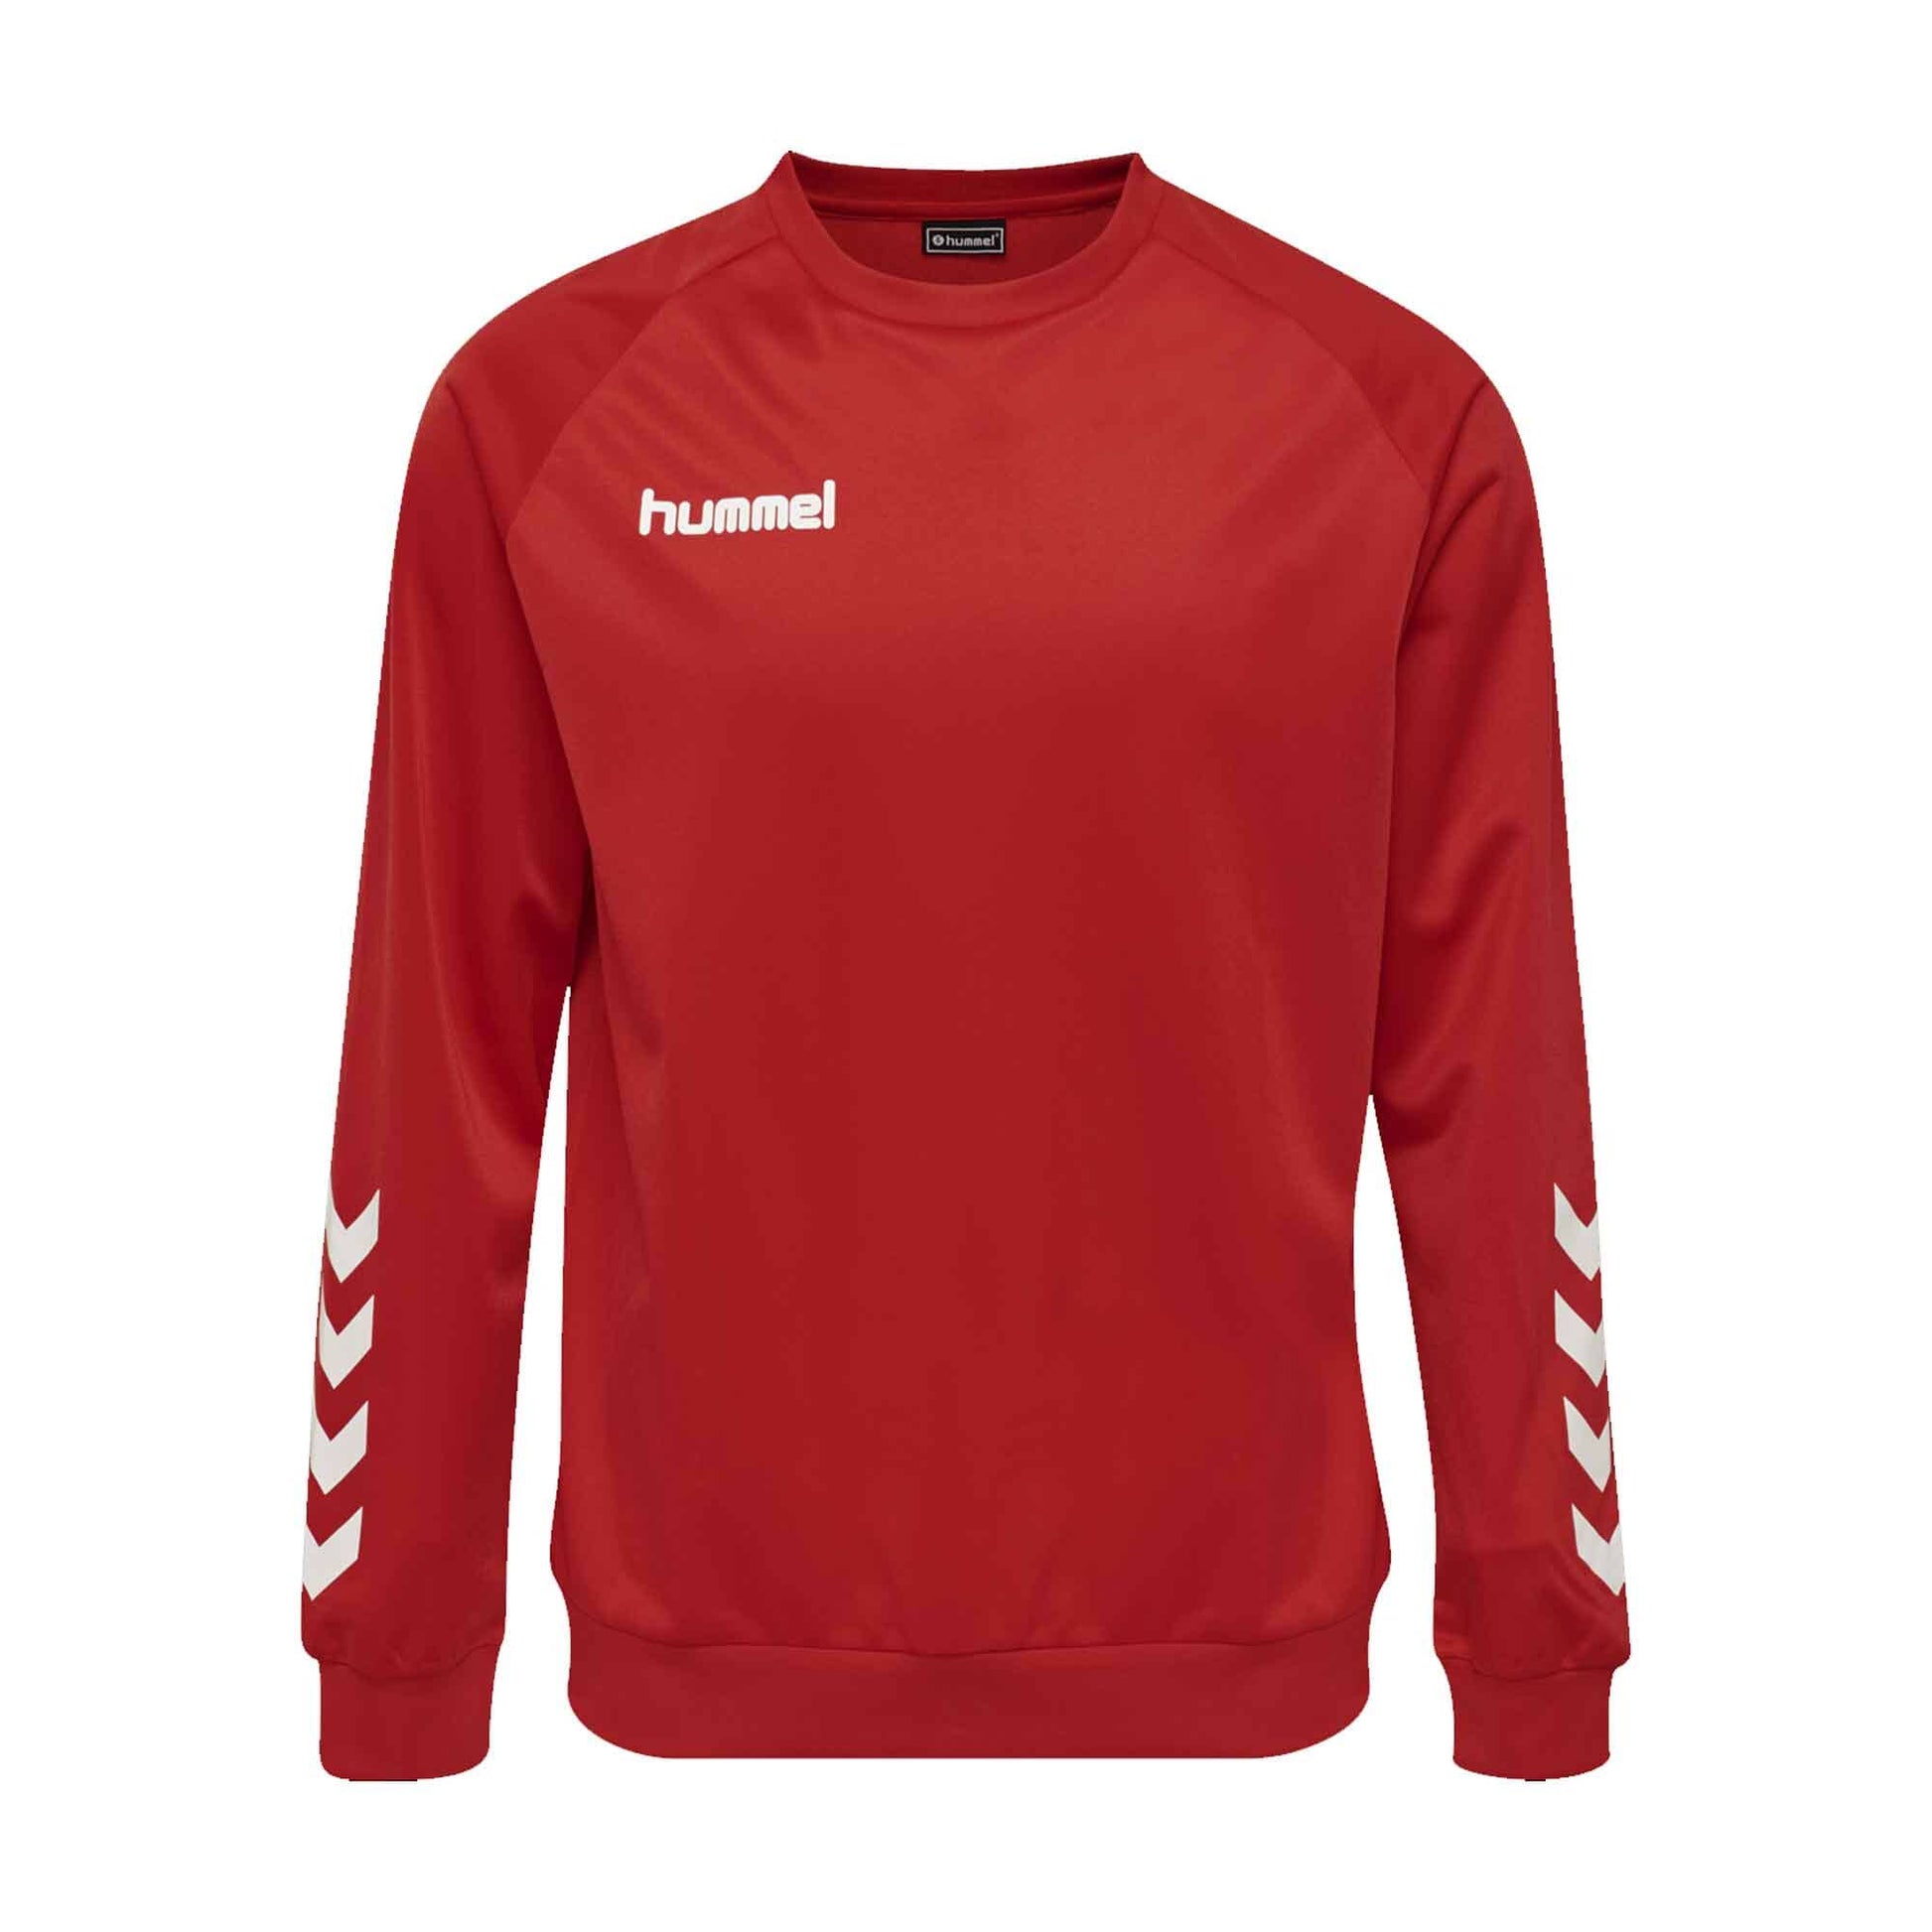 Hummel Boy's Activewear Raglan Sleeve Tee Shirt Boy's Tee Shirt HAS Apparel Red 4 Years 